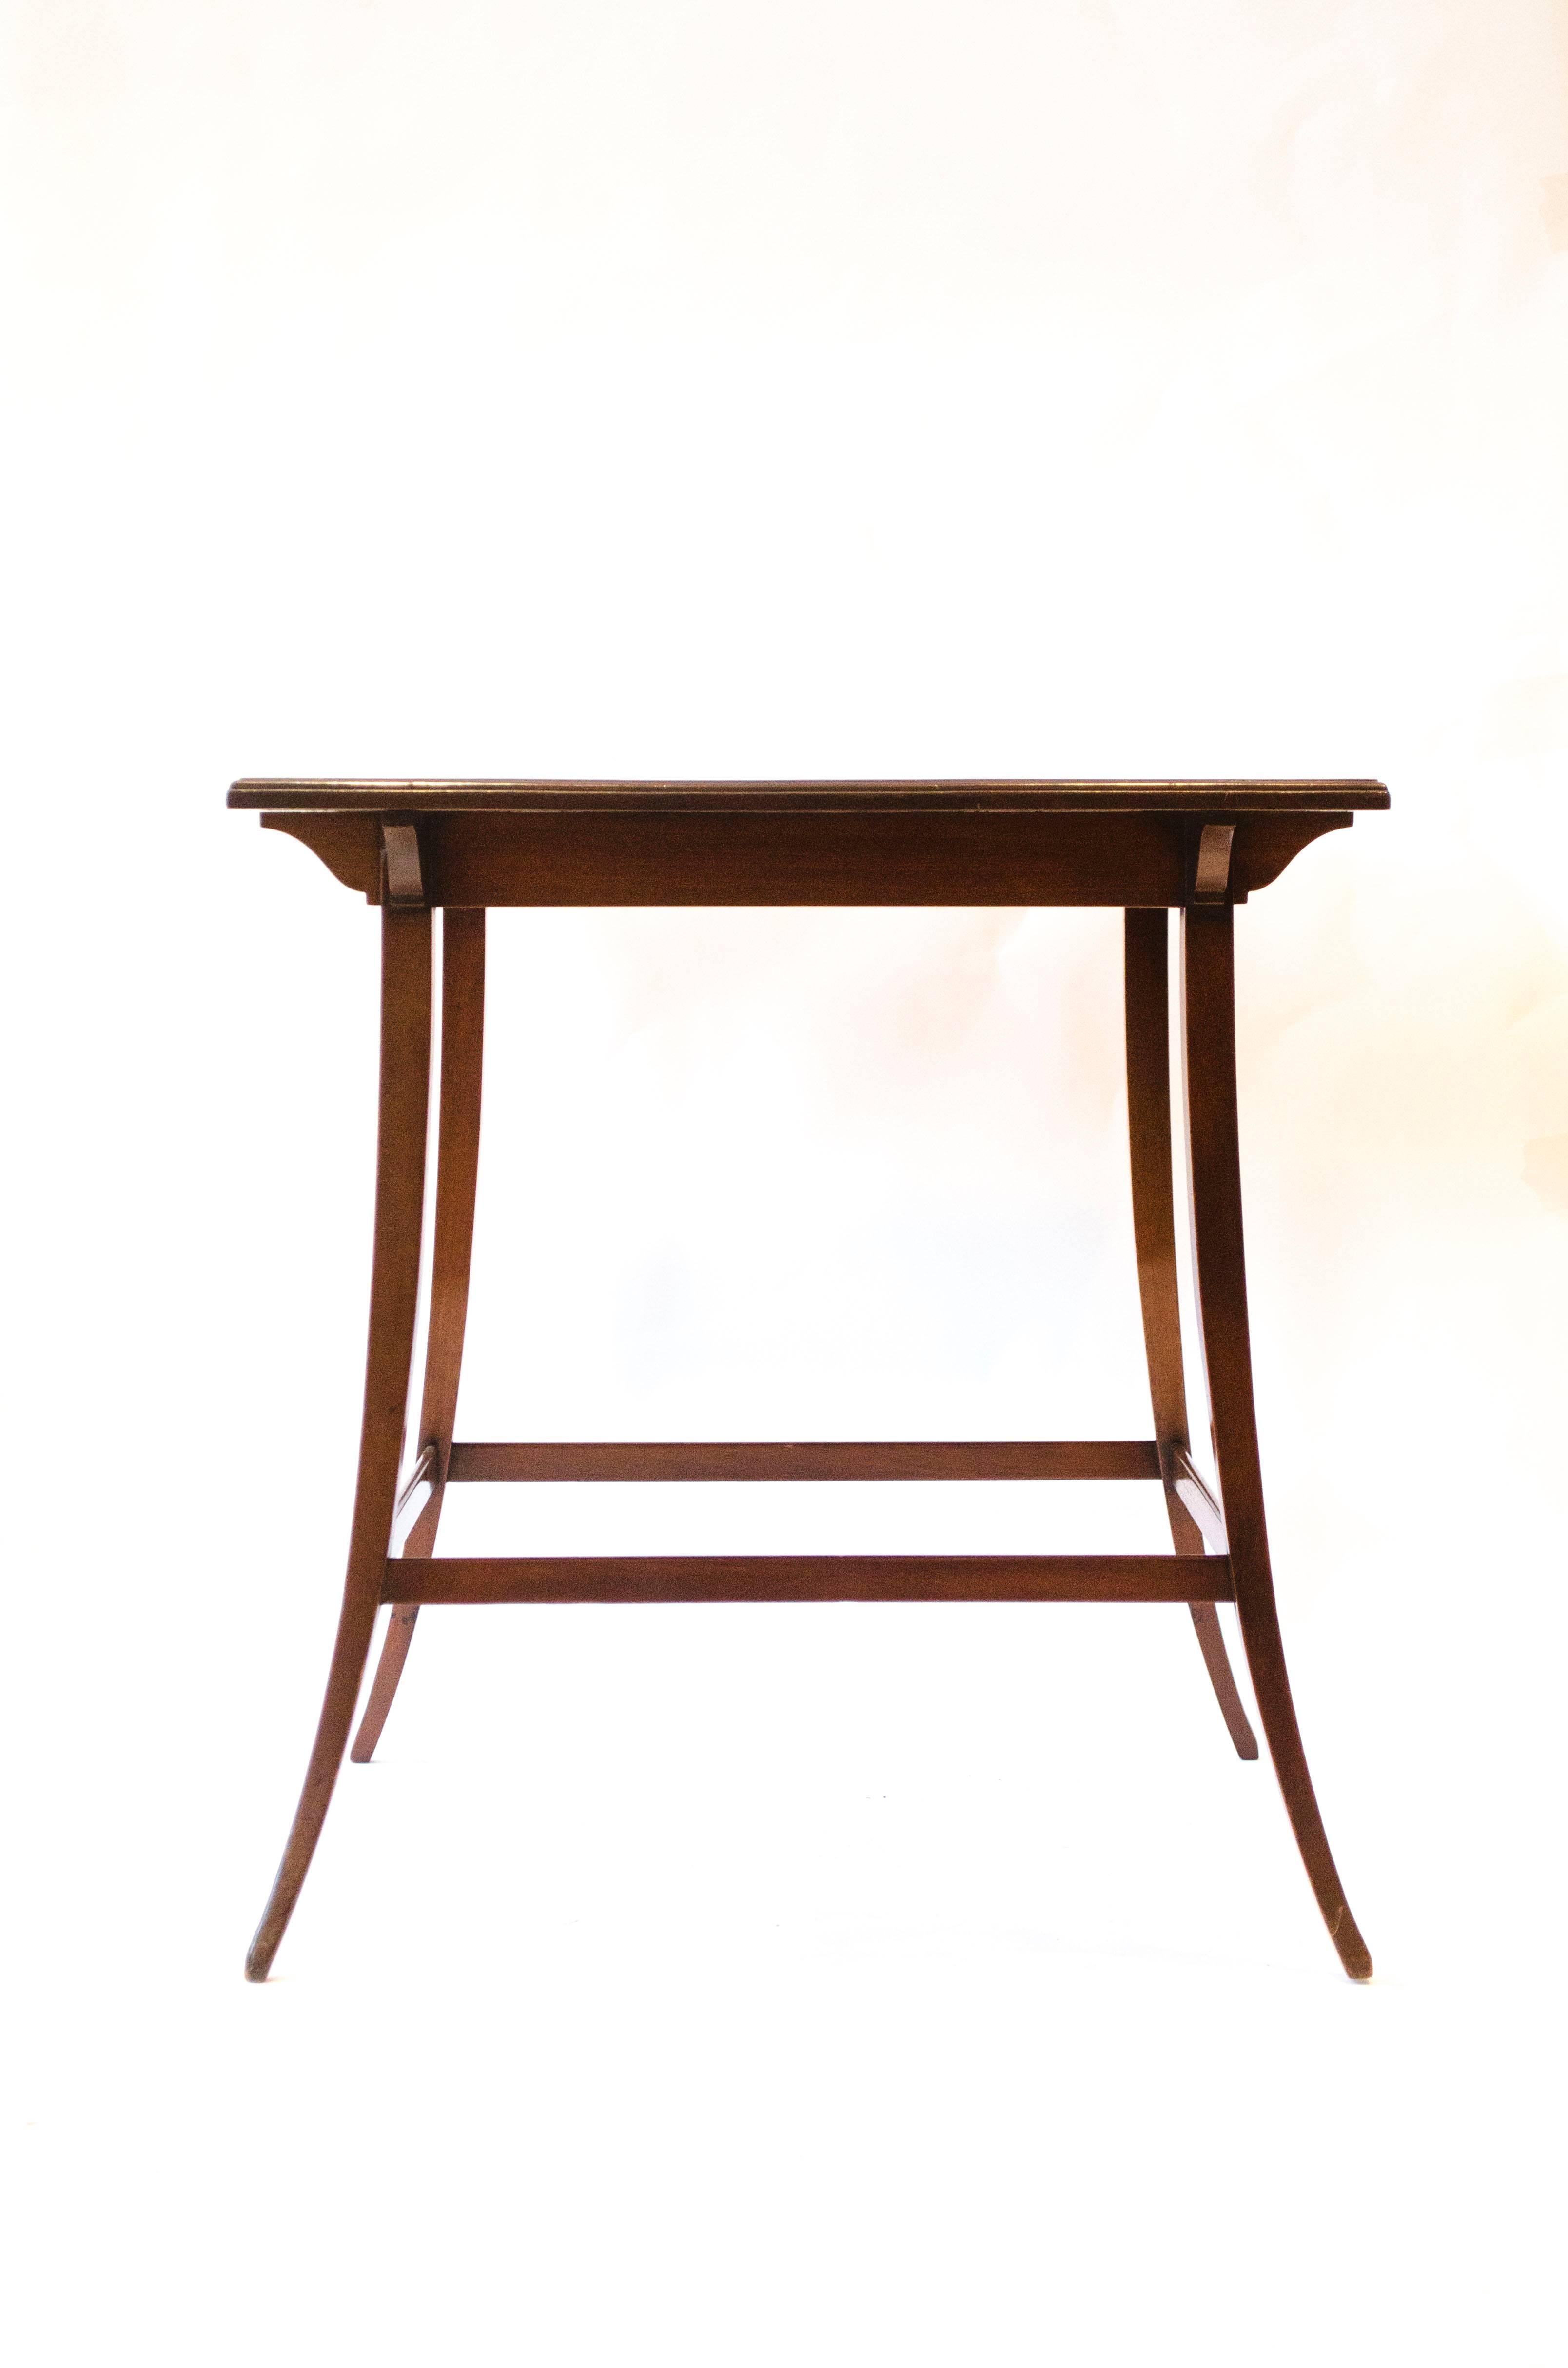 A mahogany tea table attributed to Edward William Godwin.